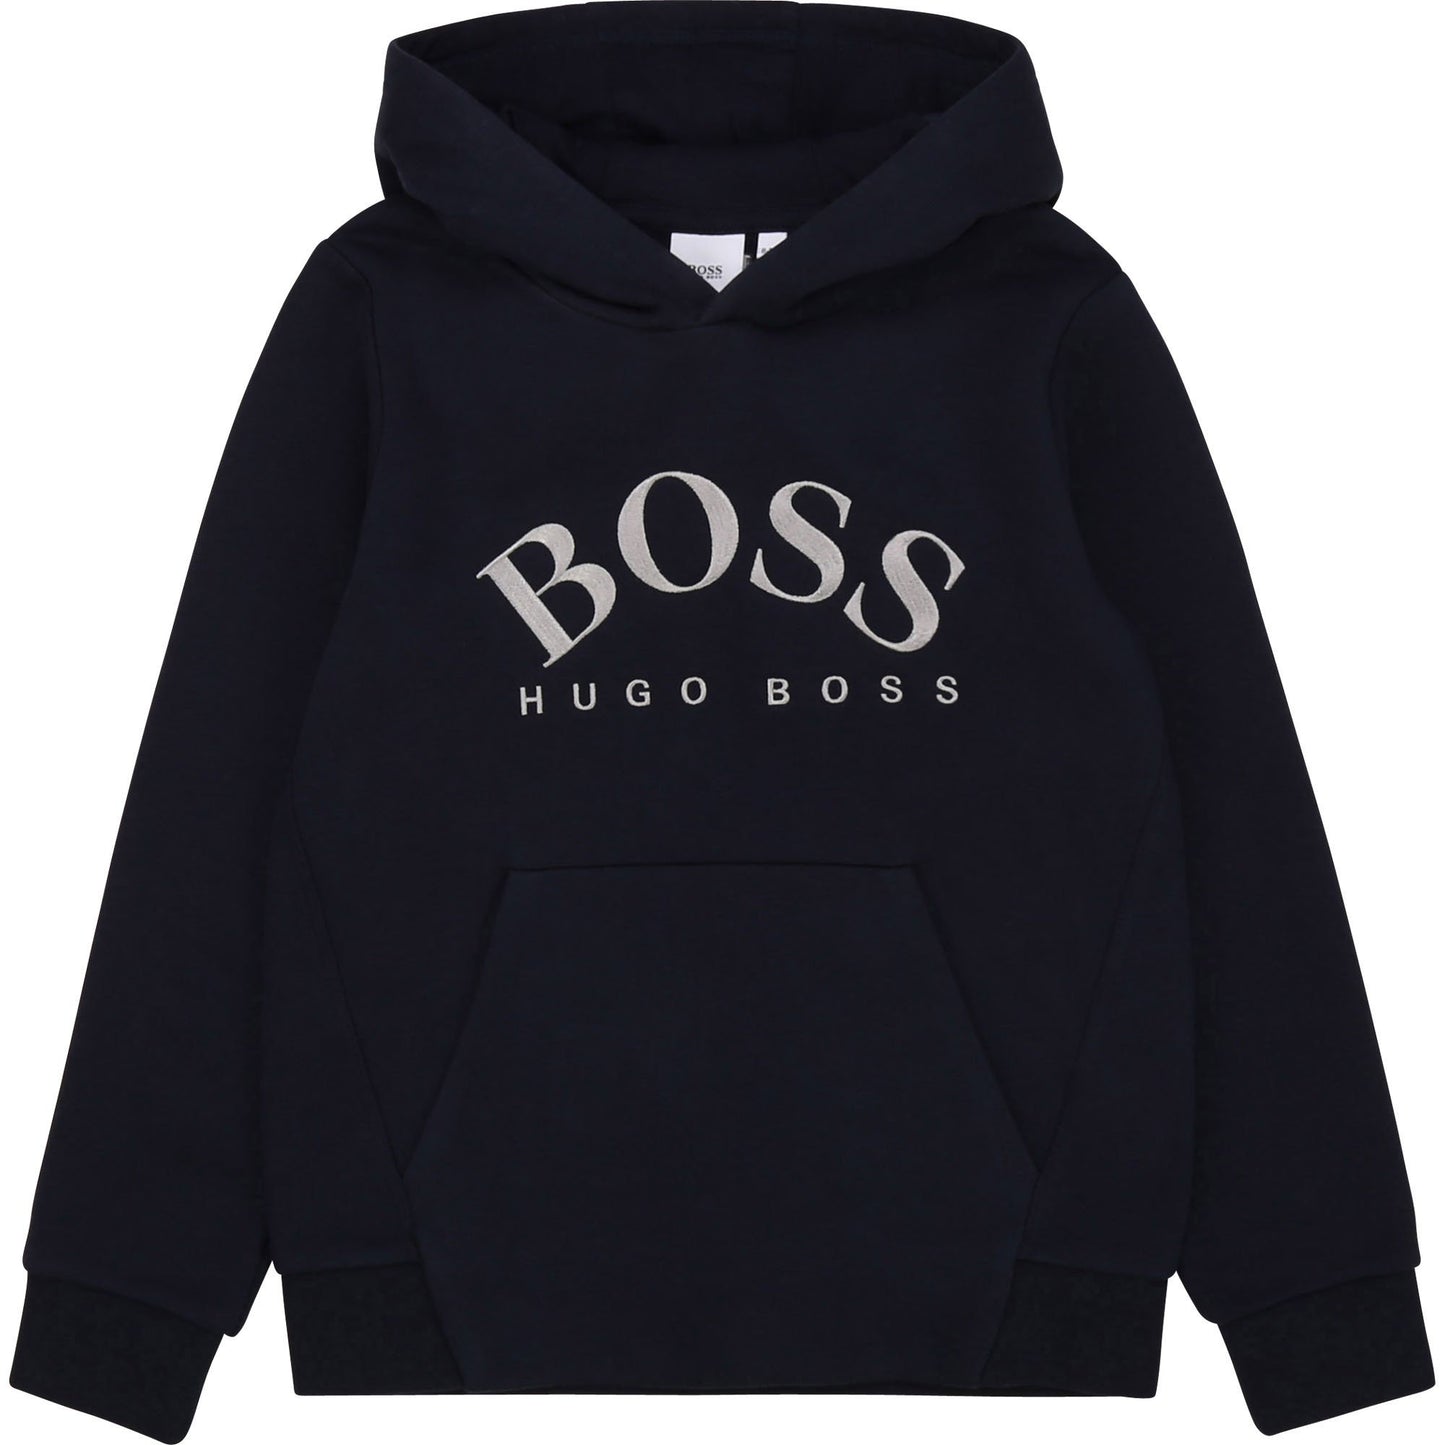 Hugo Boss Boys Hooded Sweatshirt Sweatshirts and Sweatpants Hugo Boss 